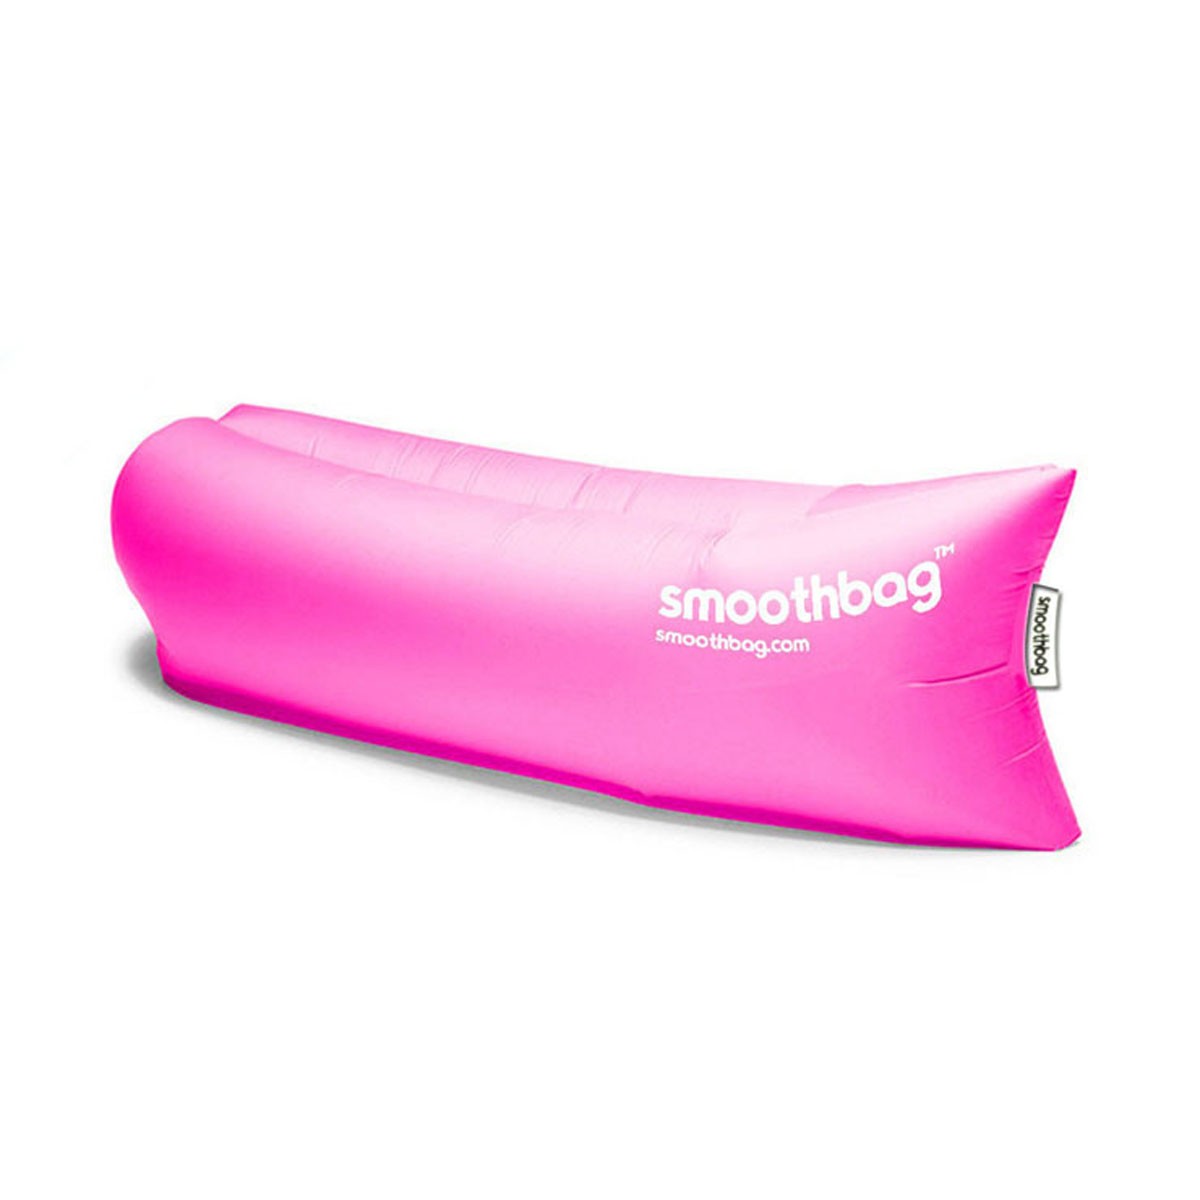 スムースバッグ smoothbag 正規品 アウトドア ソファー Smoothbag SB-PINK Pink